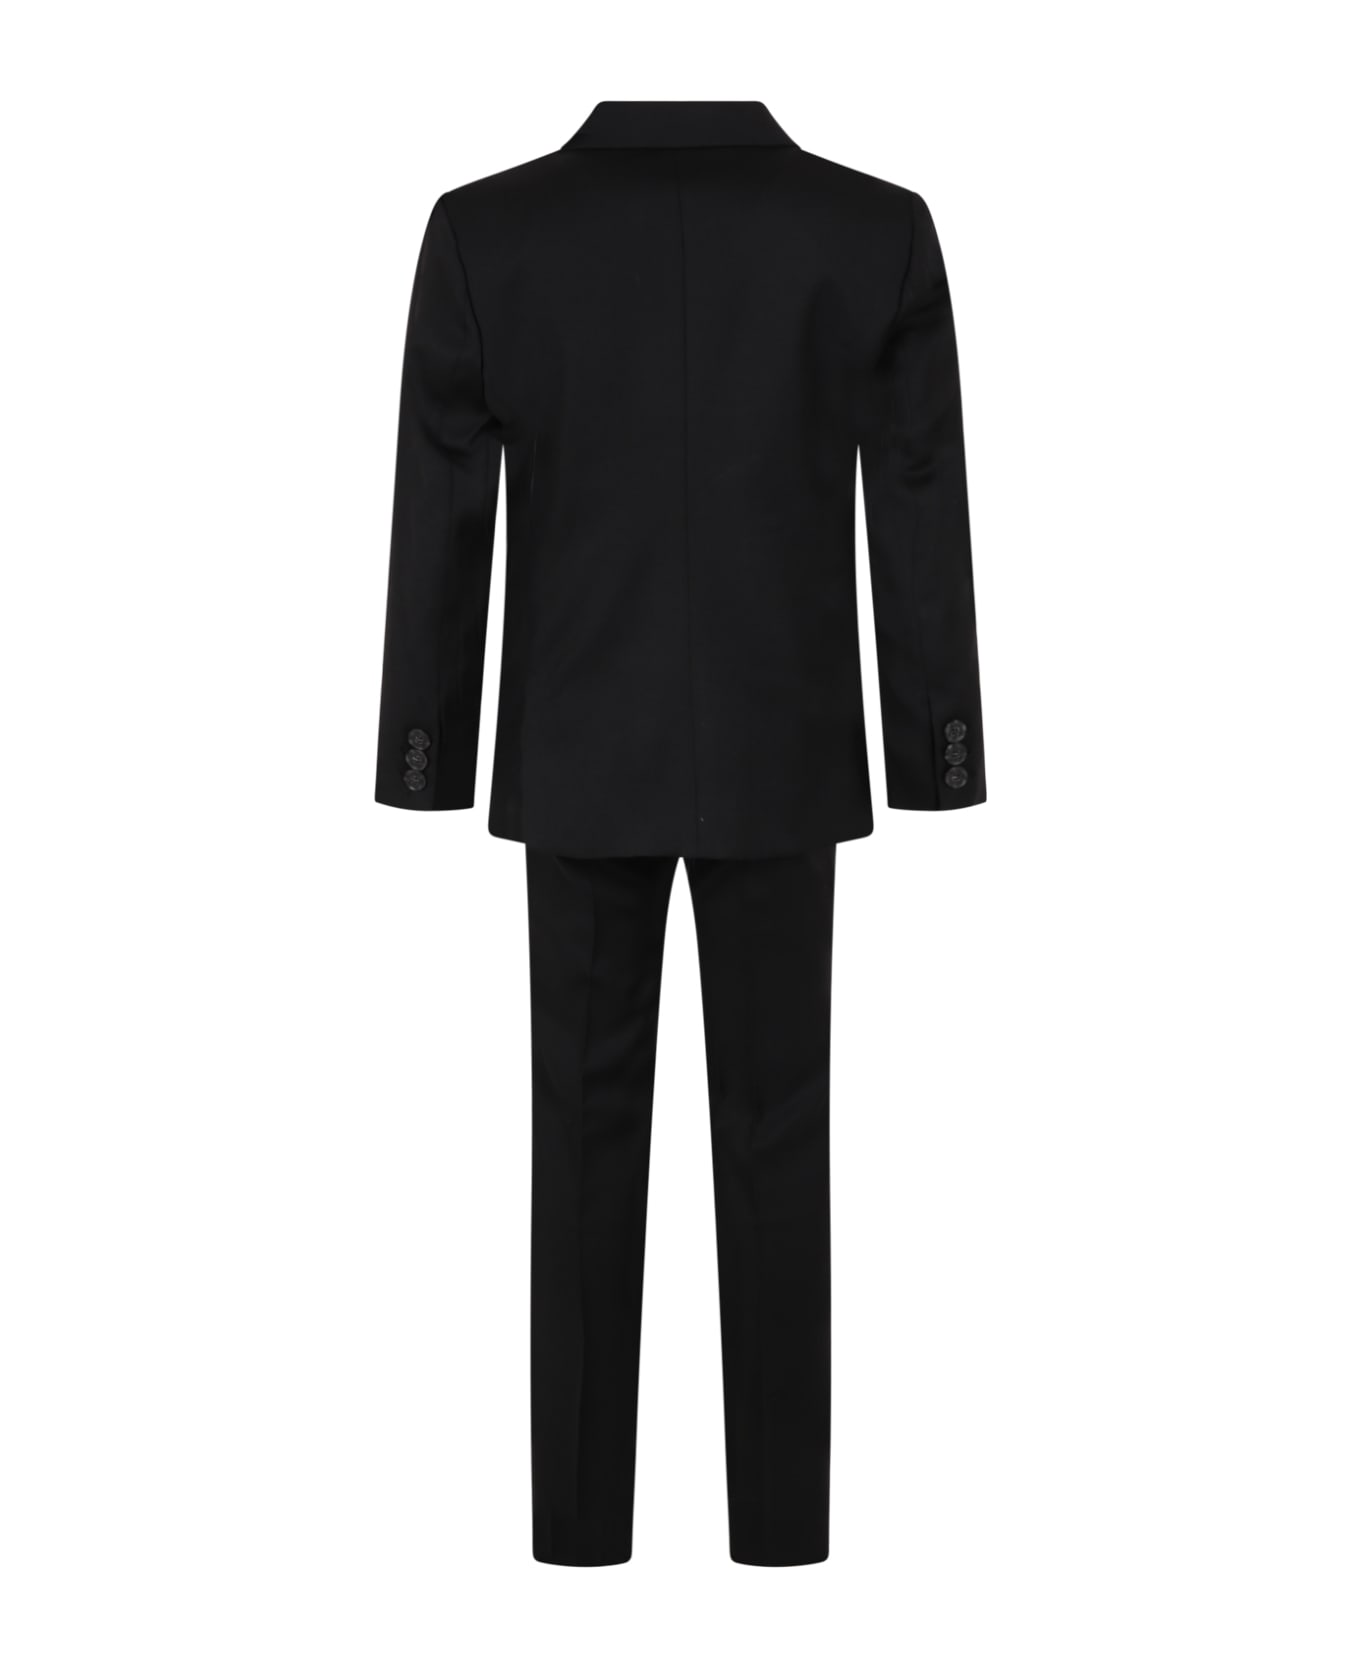 Armani Collezioni Black Suit For Boy - Black